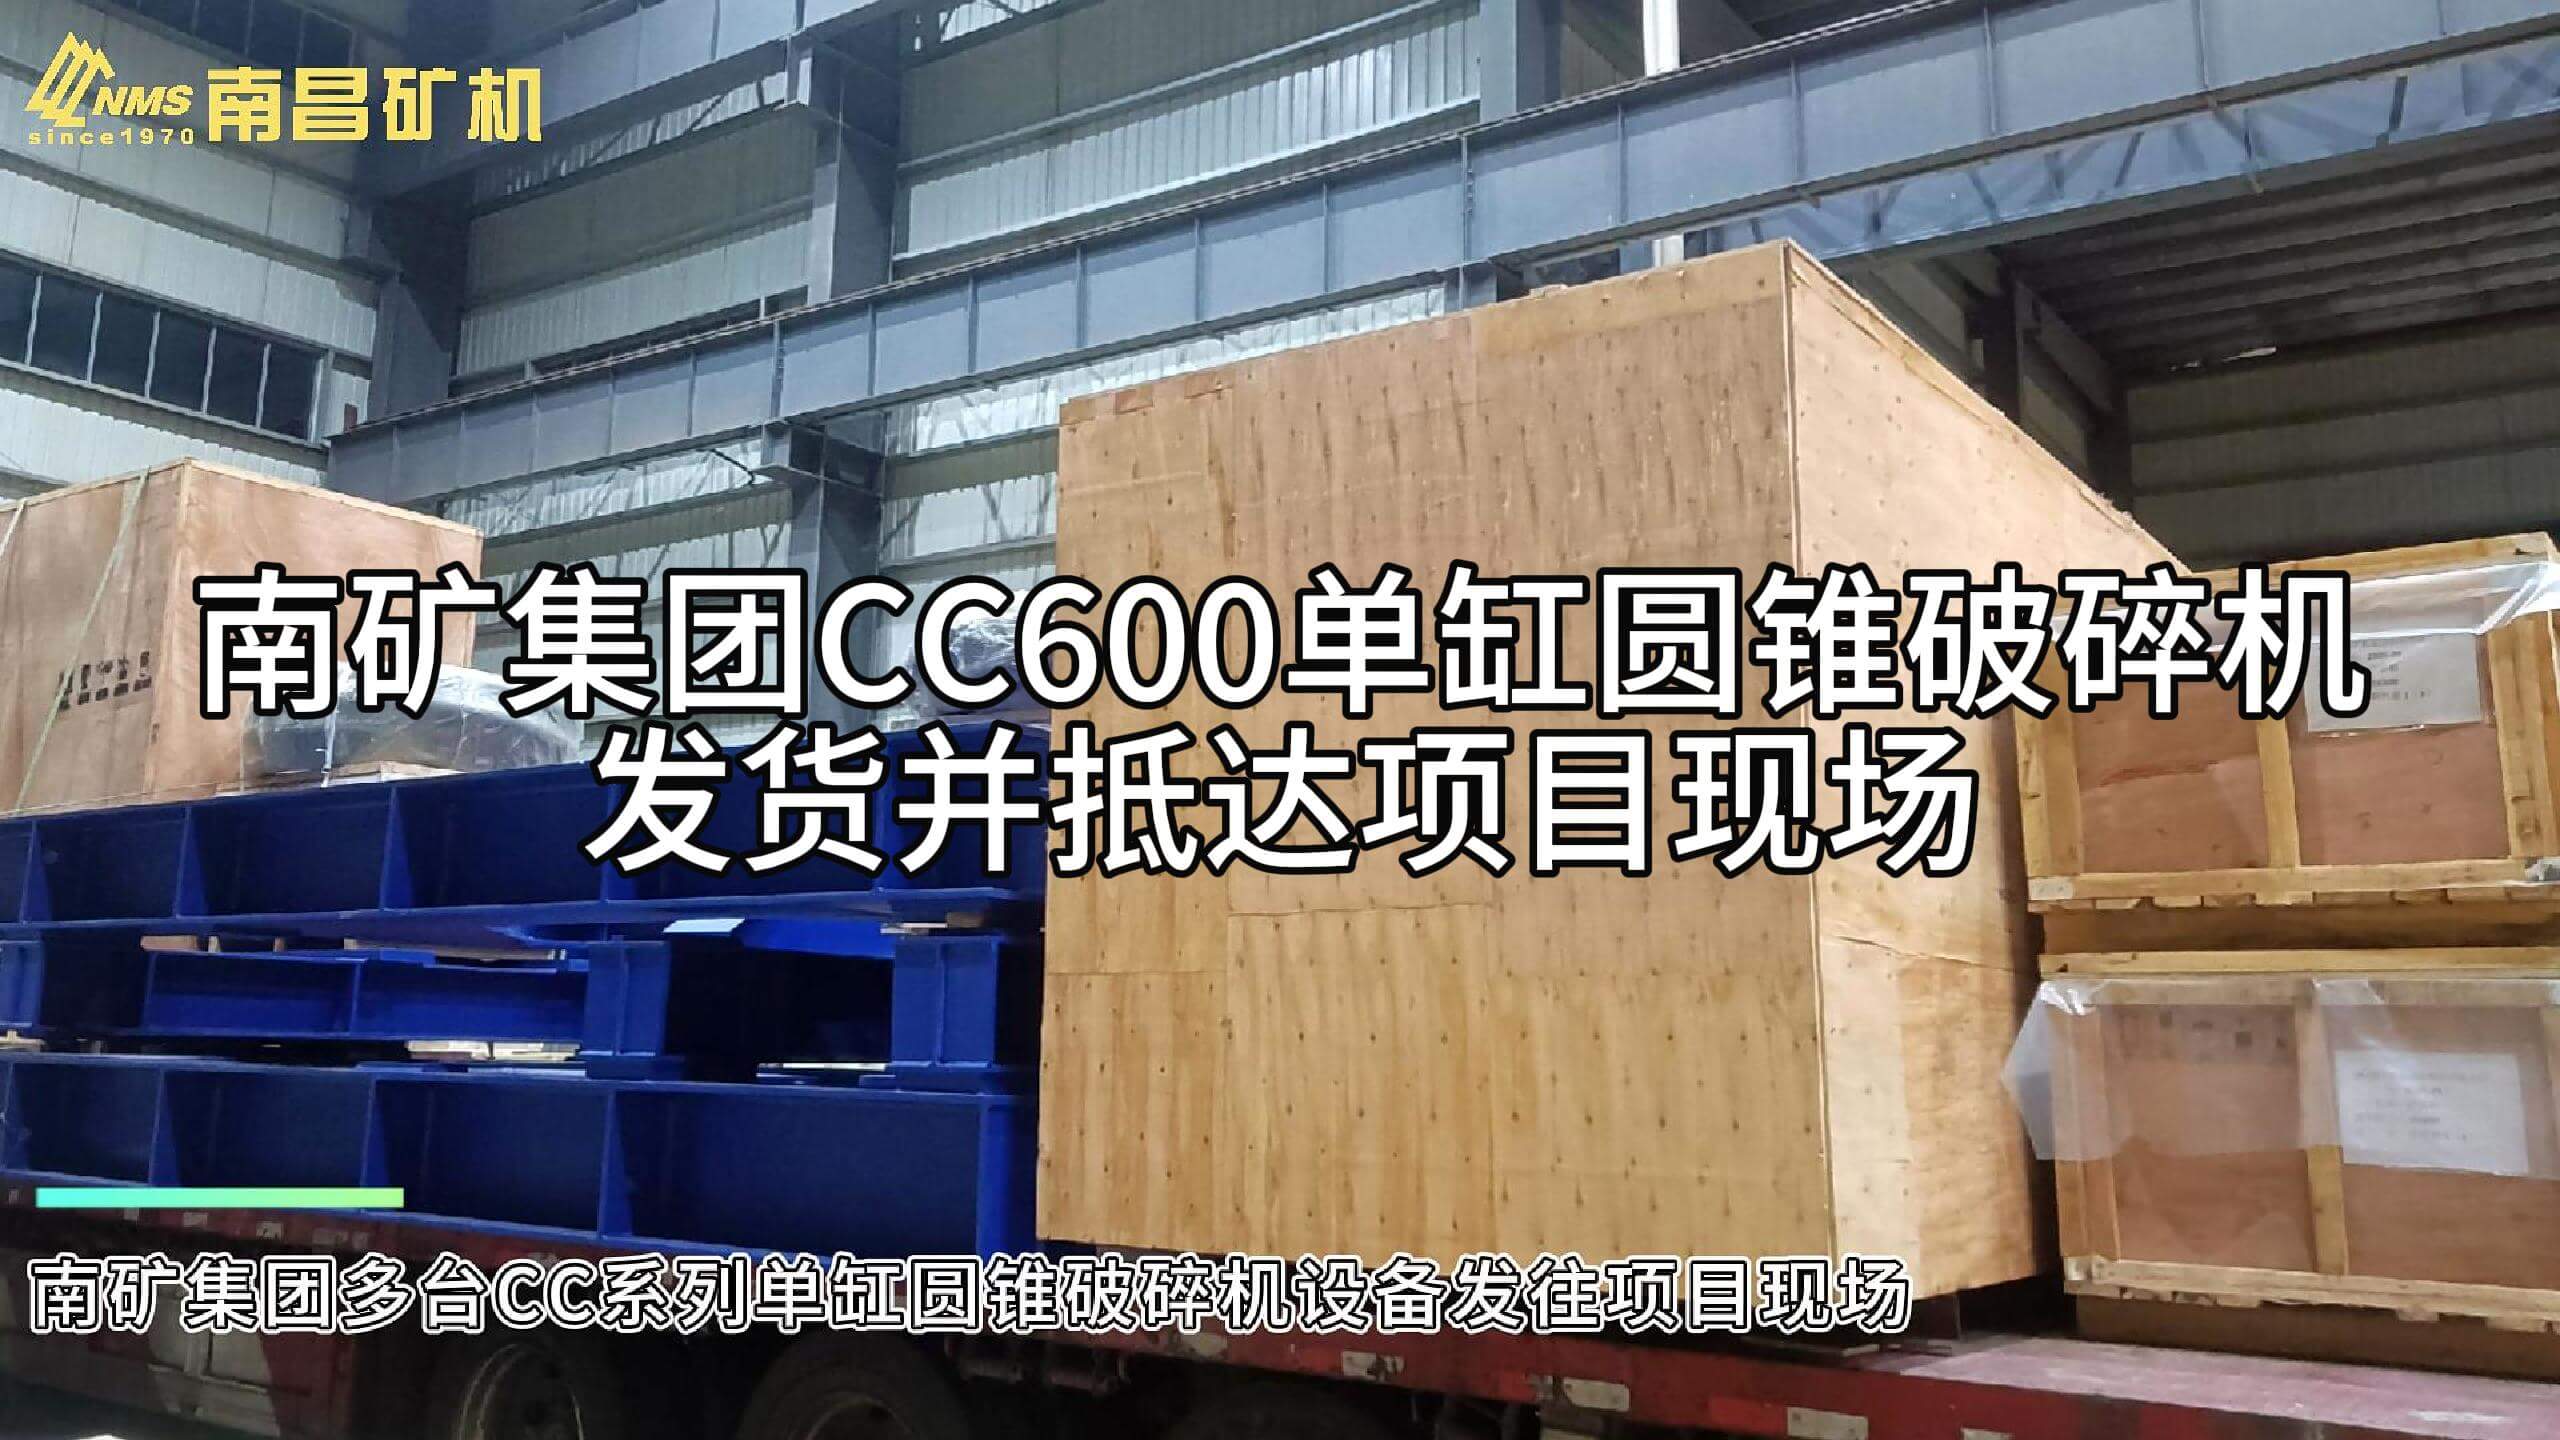 南矿集团CC600单缸圆锥破碎机发货并抵达项目现场